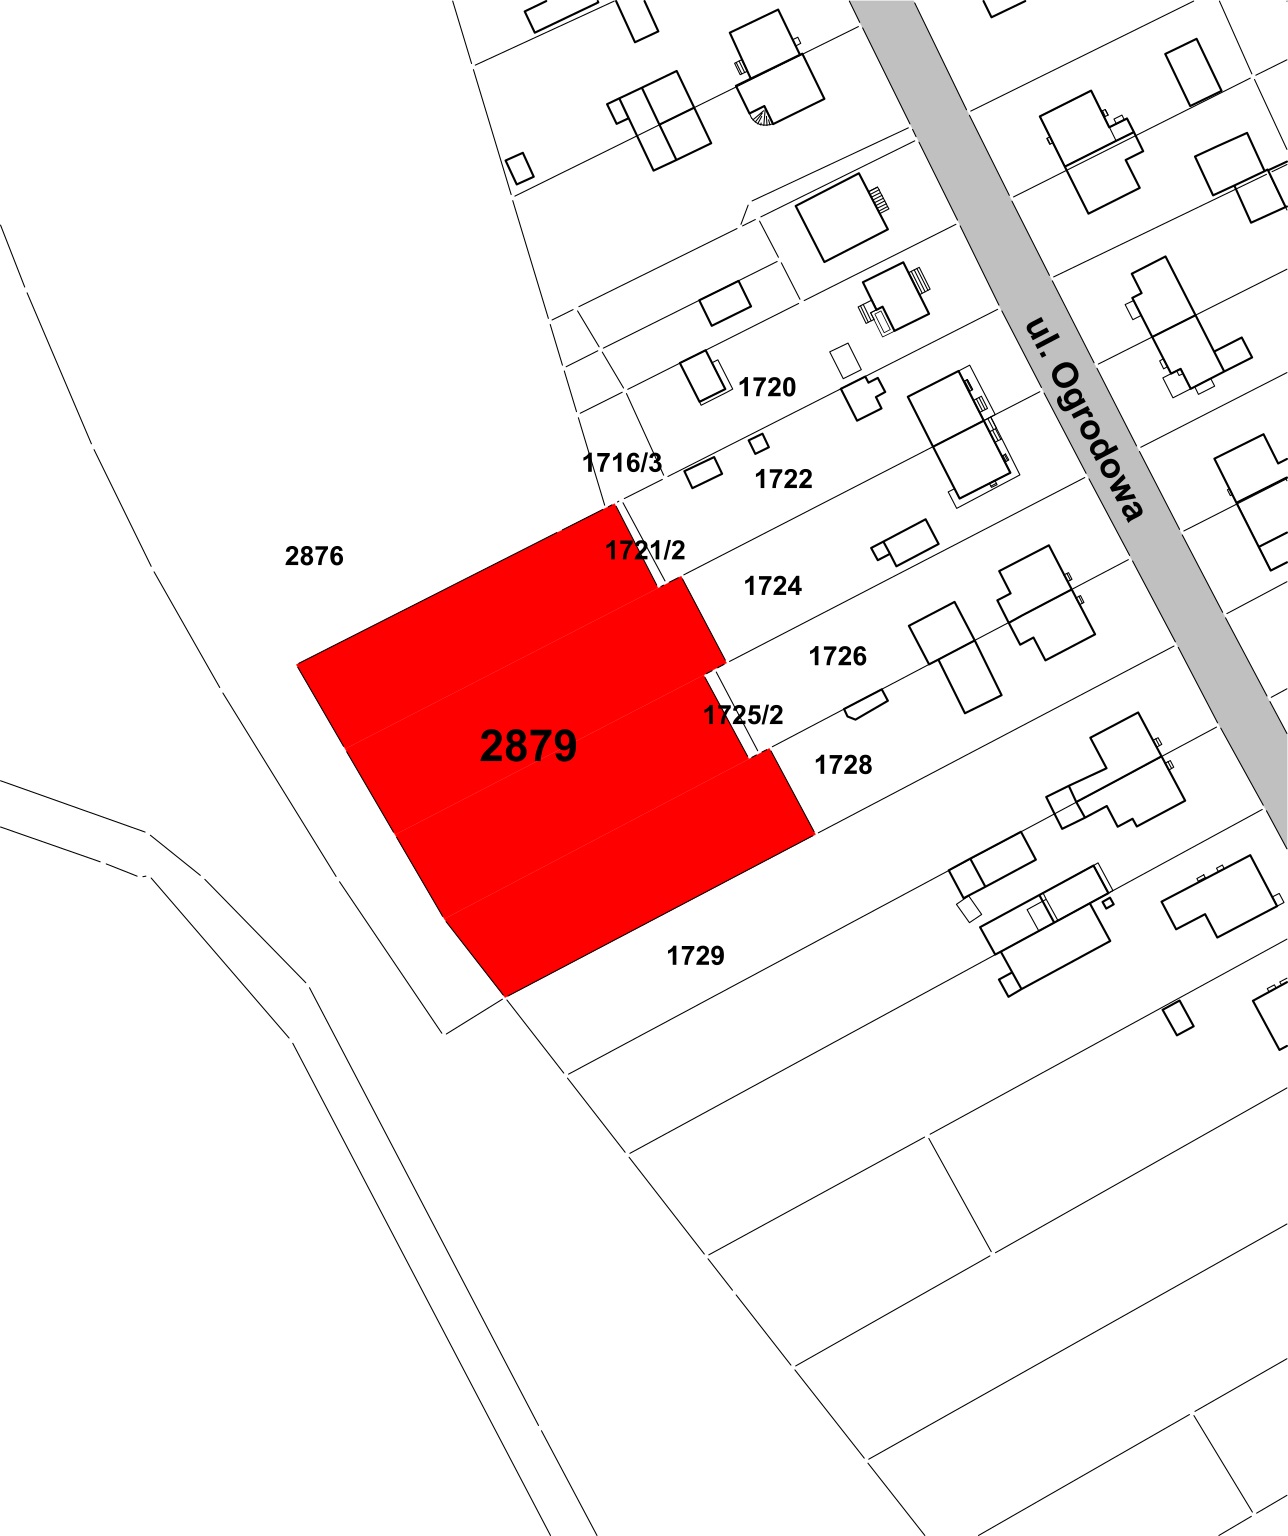 Ogłoszenie o drugim przetargu ustnym ograniczonym na sprzedaż nieruchomości gruntowej niezabudowanej, położonej w Ełku przy ul. Ogrodowej, oznaczonej w ewidencji gruntów nr 2879 o obszarze 0,3528 ha.